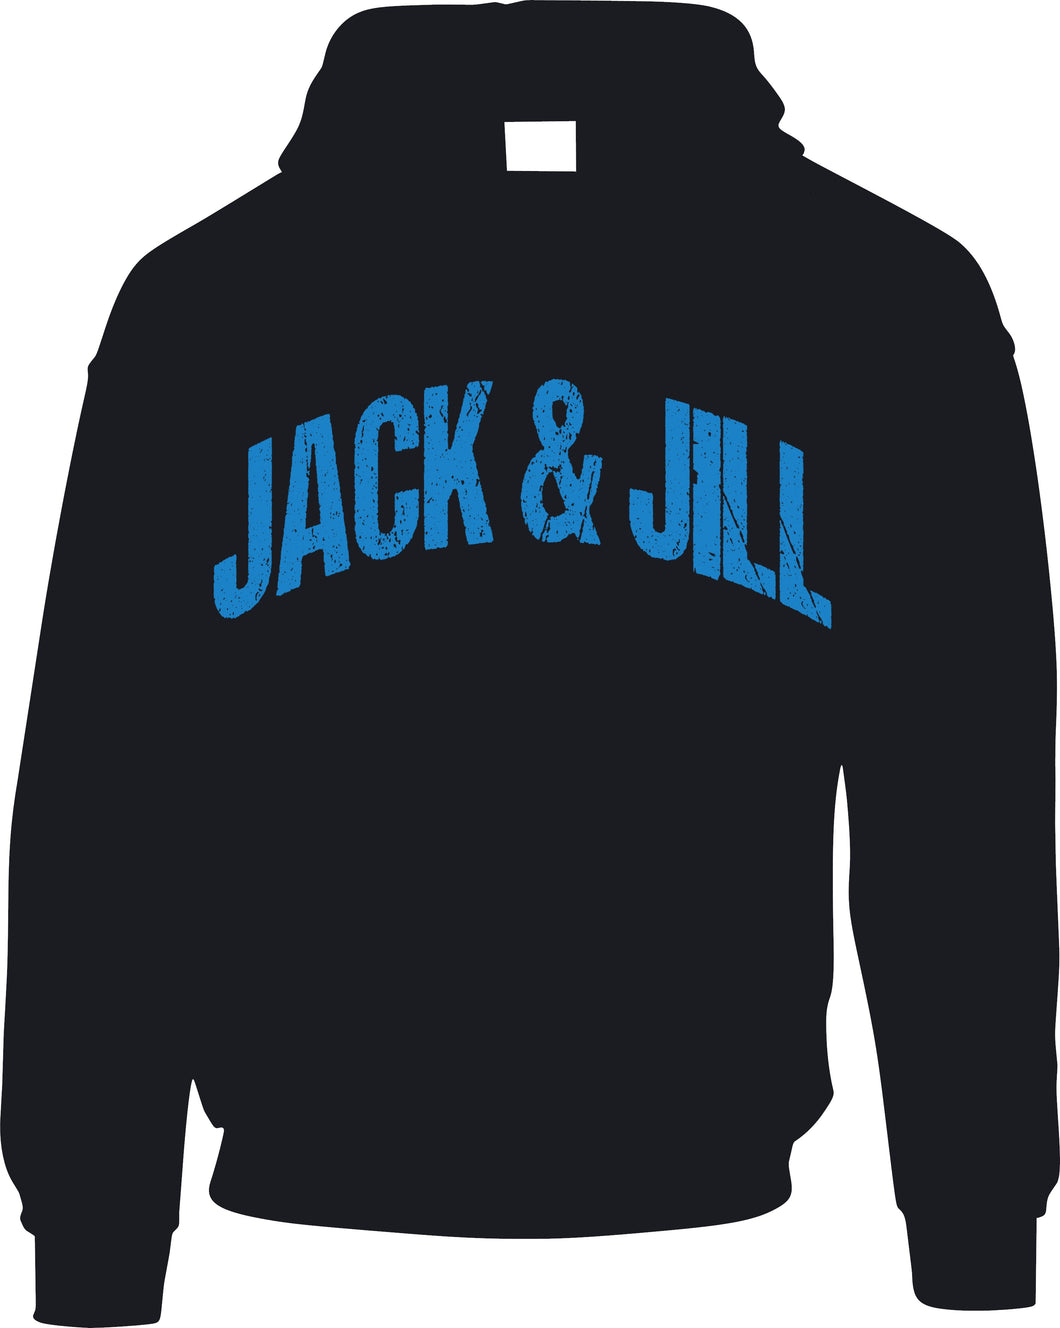 JACK & JILL Hoodie - Blue